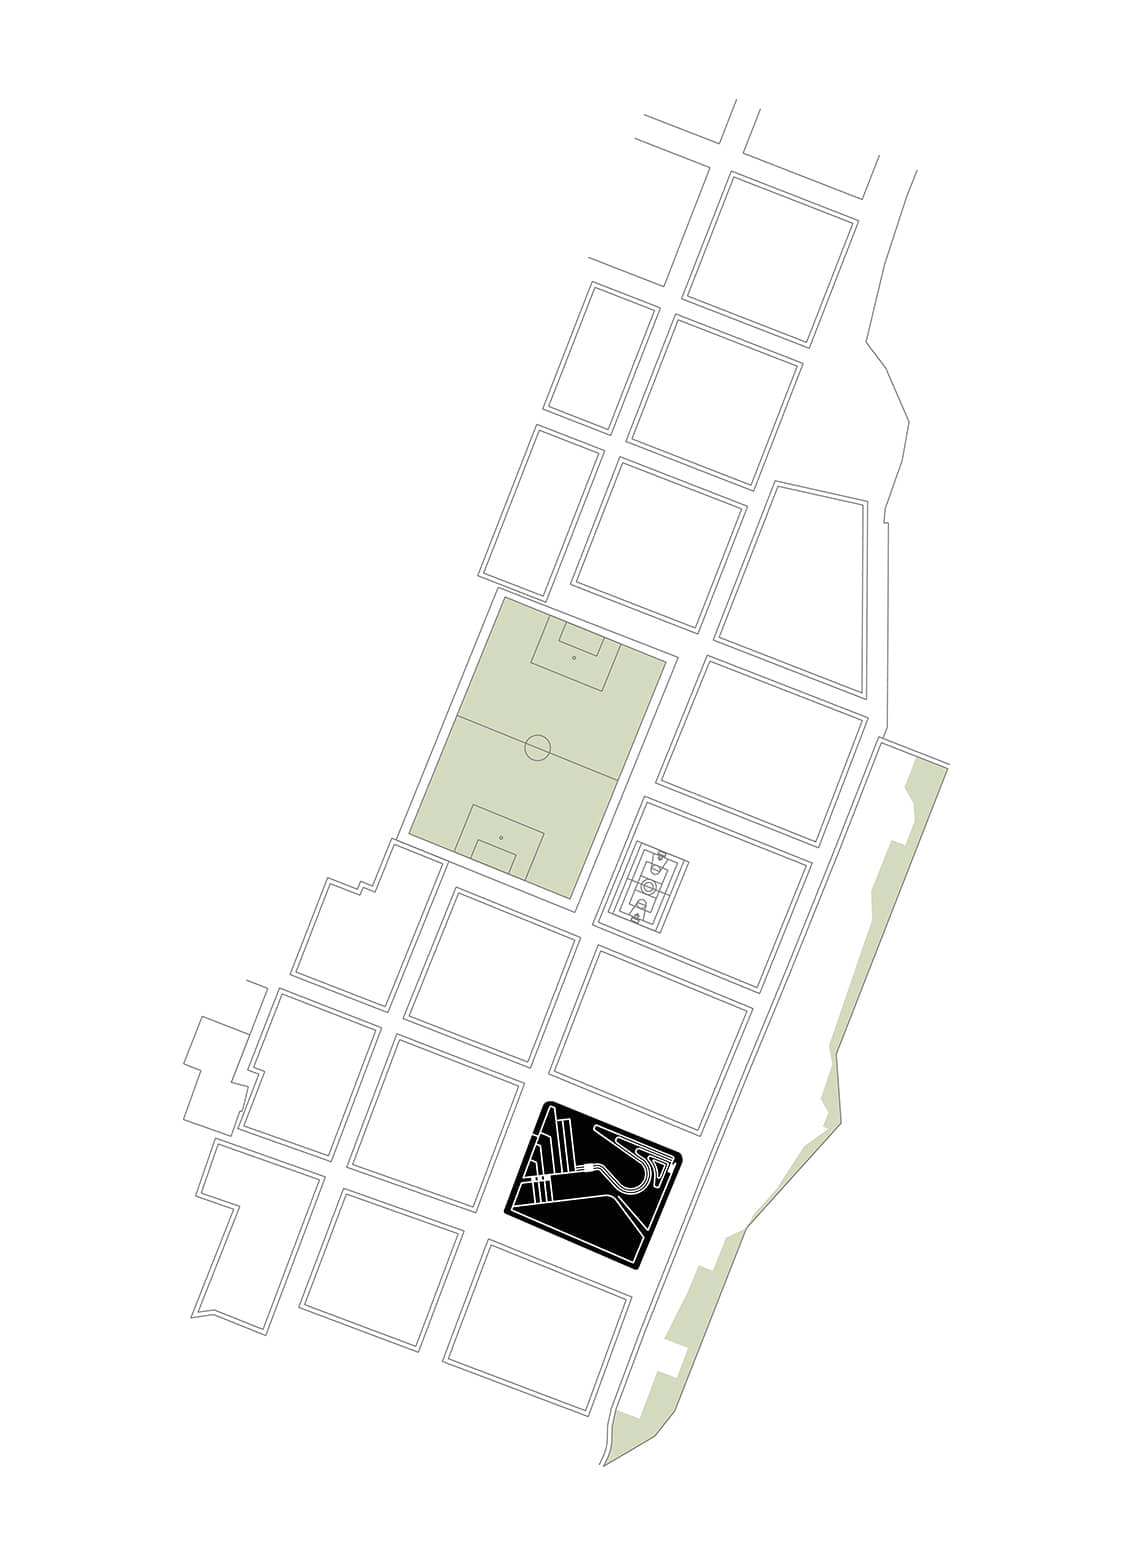 alt=ubicación de la plaza de la pachamama en ocobamba